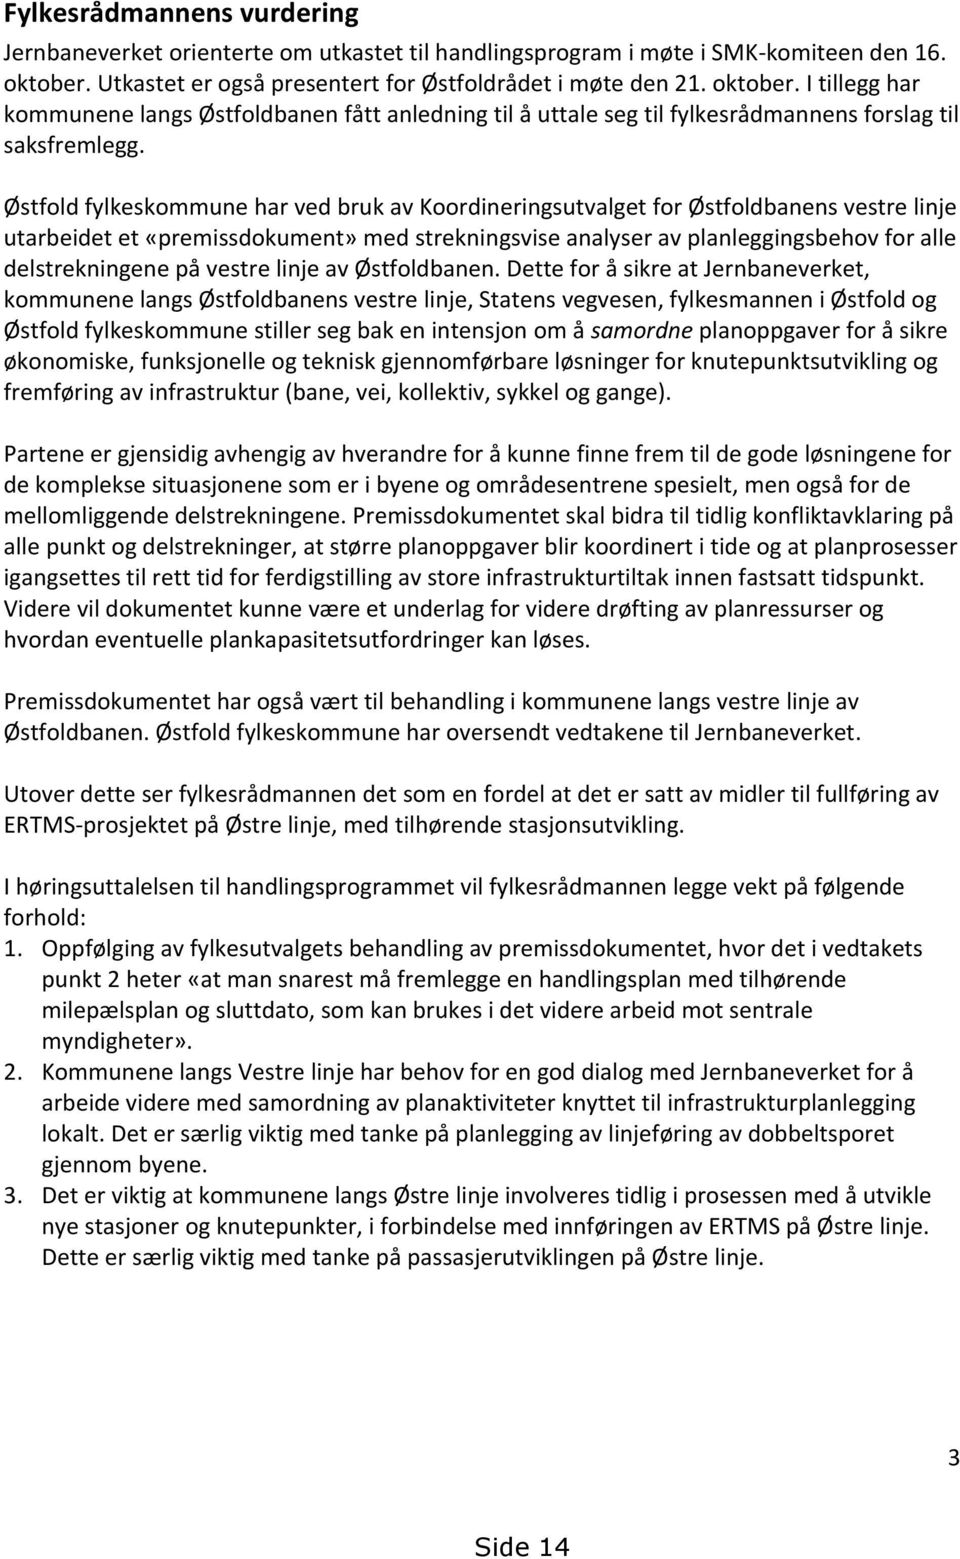 Østfold fylkeskommune har ved bruk av Koordineringsutvalget for Østfoldbanens vestre linje utarbeidet et «premissdokument» med strekningsvise analyser av planleggingsbehov for alle delstrekningene på